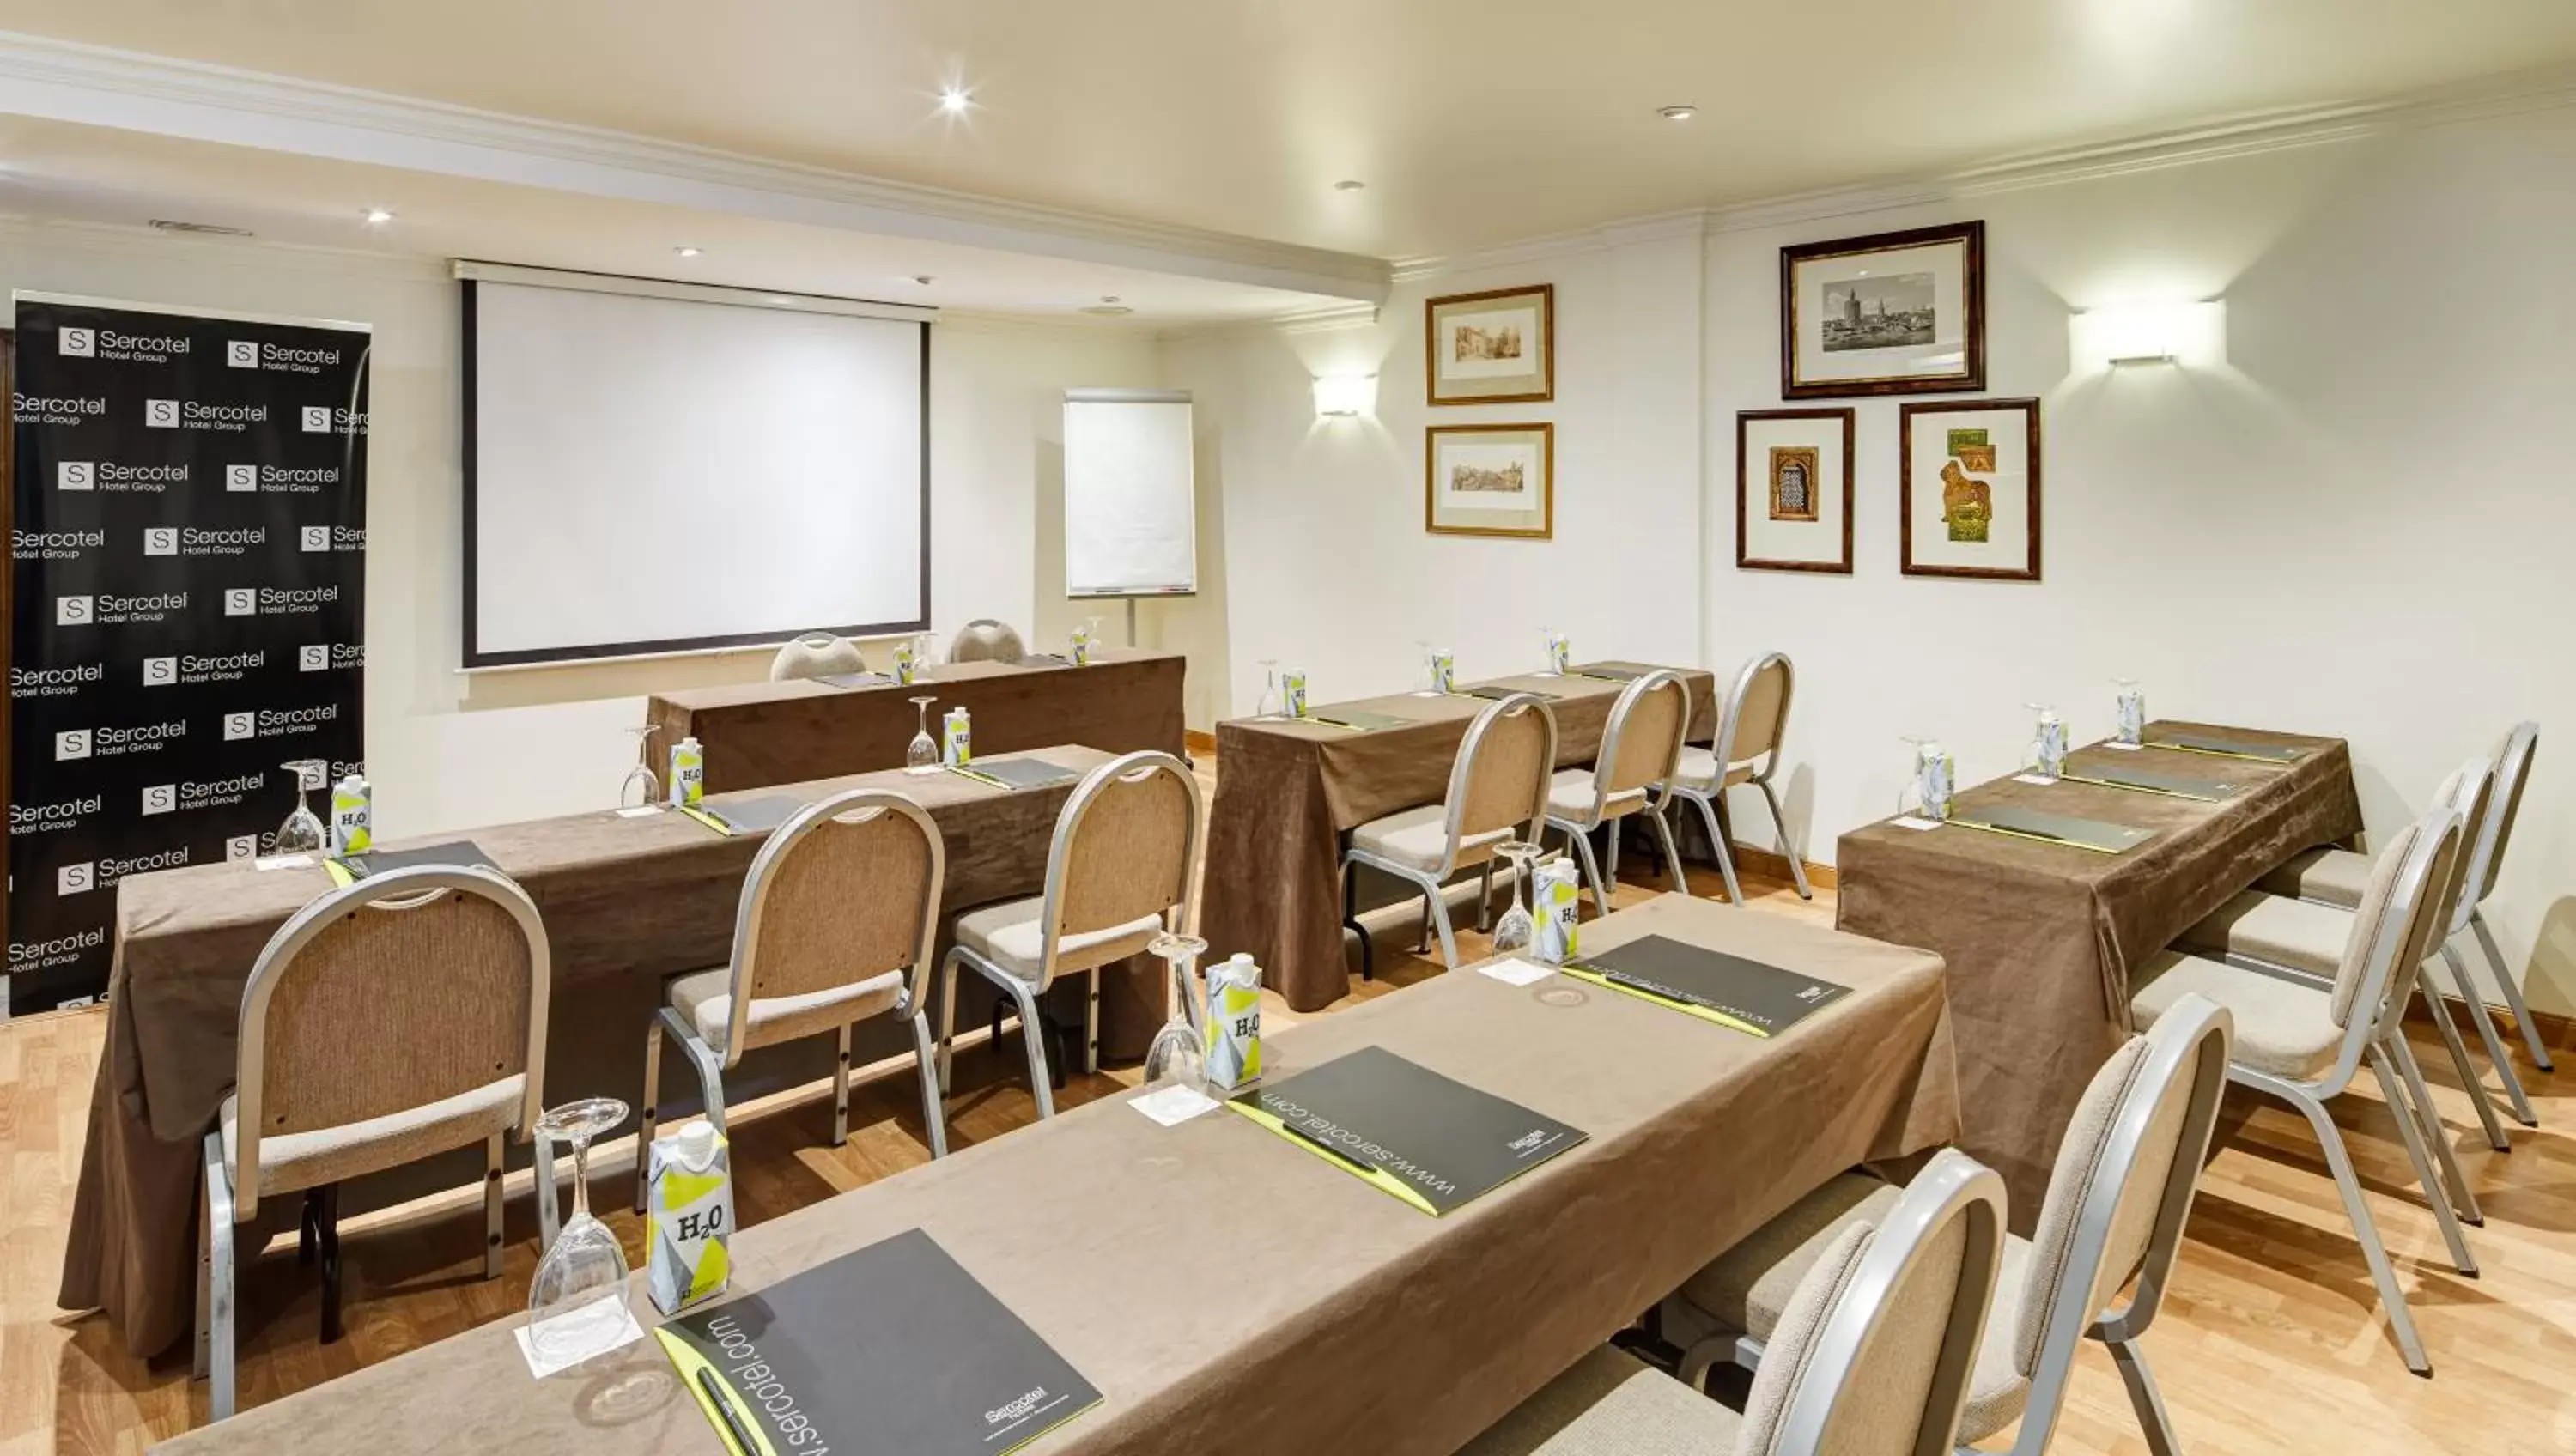 Meeting/conference room in Sercotel Palacio de los Gamboa